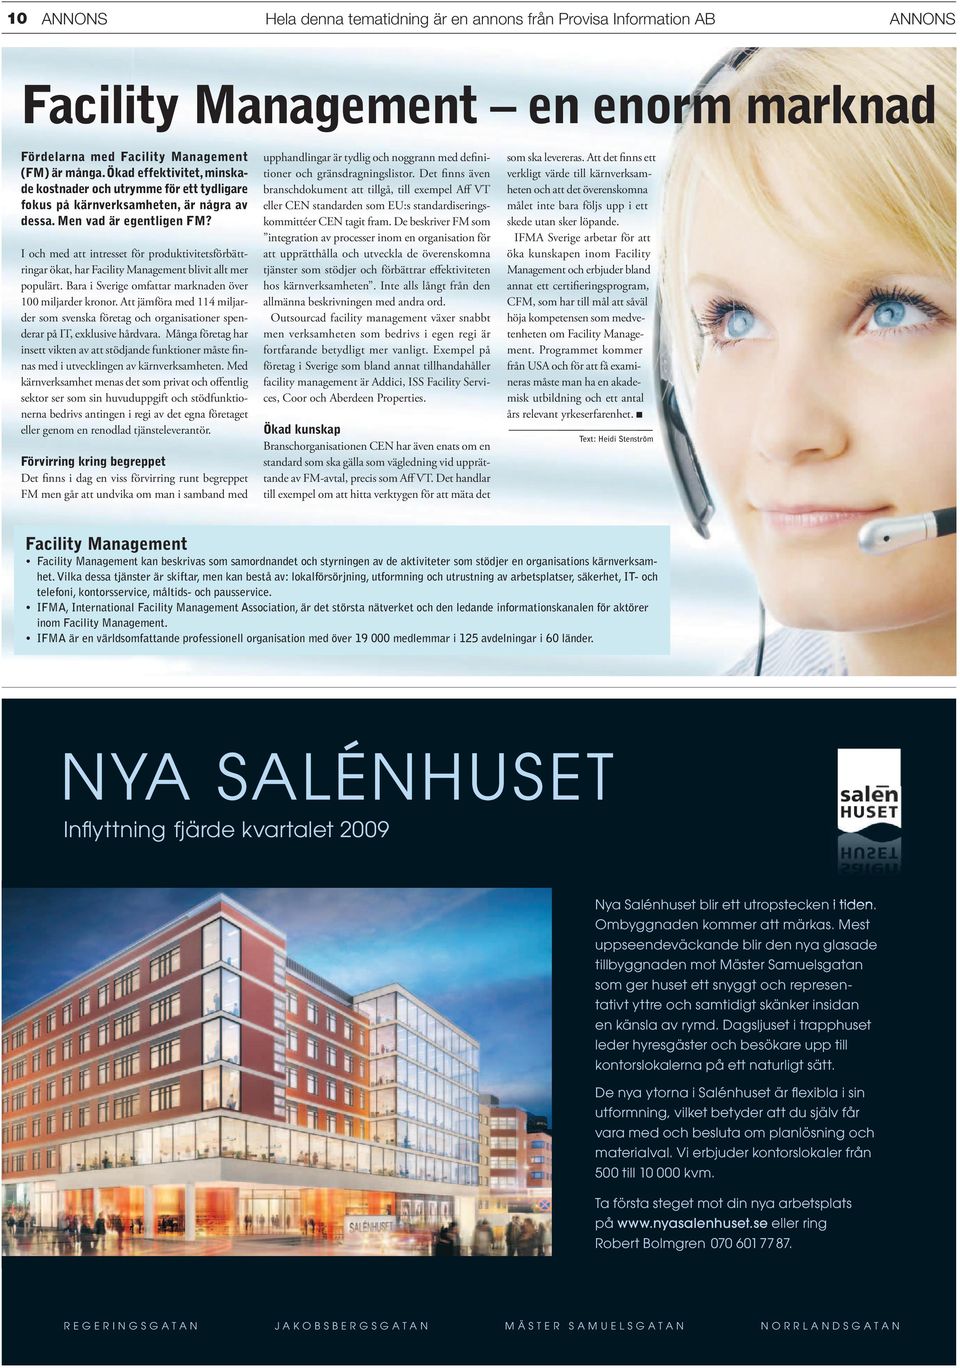 I och med att intresset för produktivitetsförbättringar ökat, har Facility Management blivit allt mer populärt. Bara i Sverige omfattar marknaden över 100 miljarder kronor.